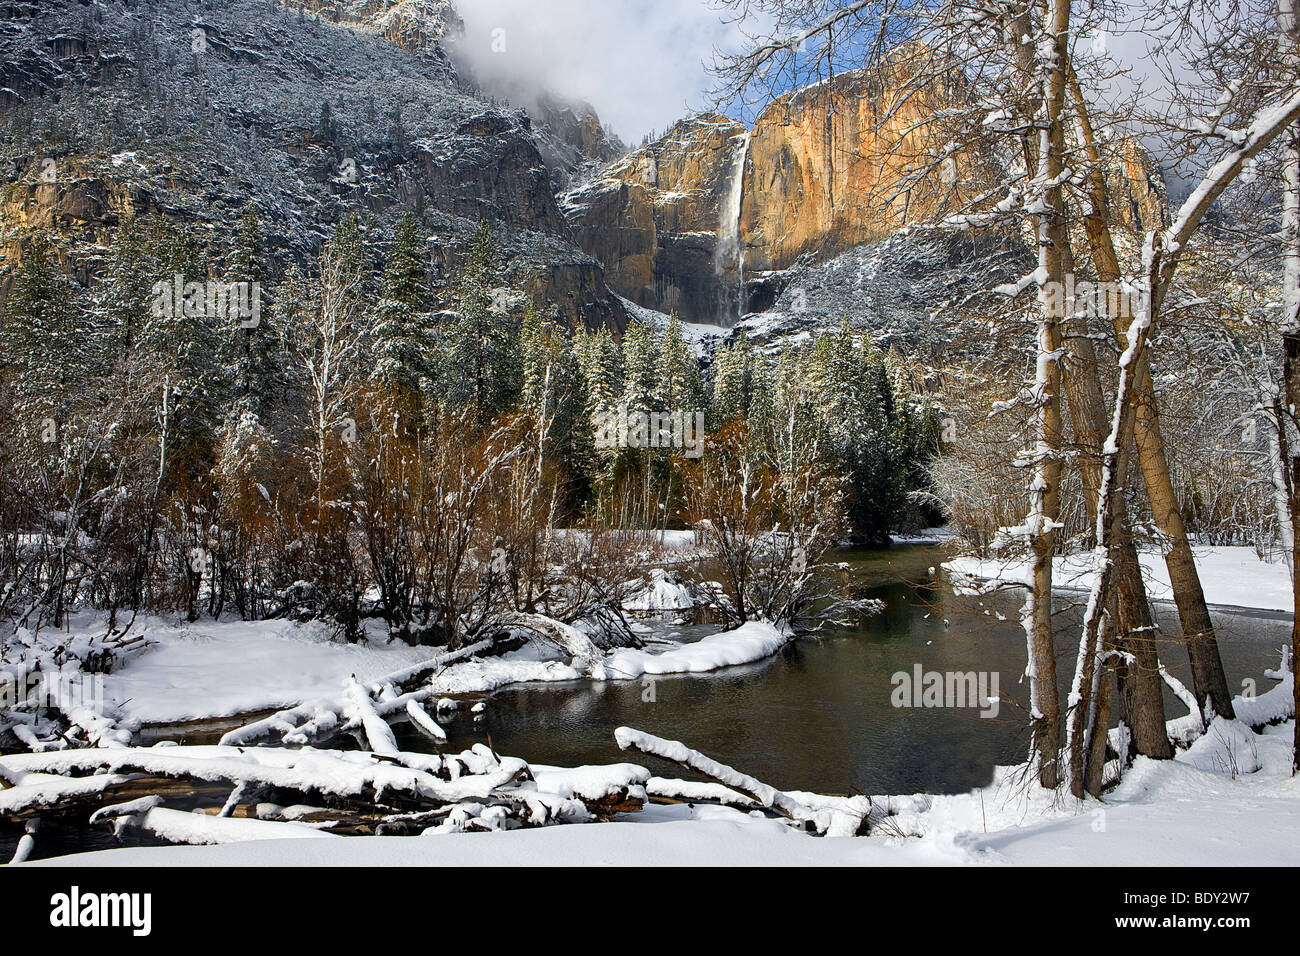 Il fiume Merced avvolge passato modo Yosemite Falls dopo la cancellazione di una tempesta di neve. Parco Nazionale di Yosemite in California, Stati Uniti d'America. Foto Stock